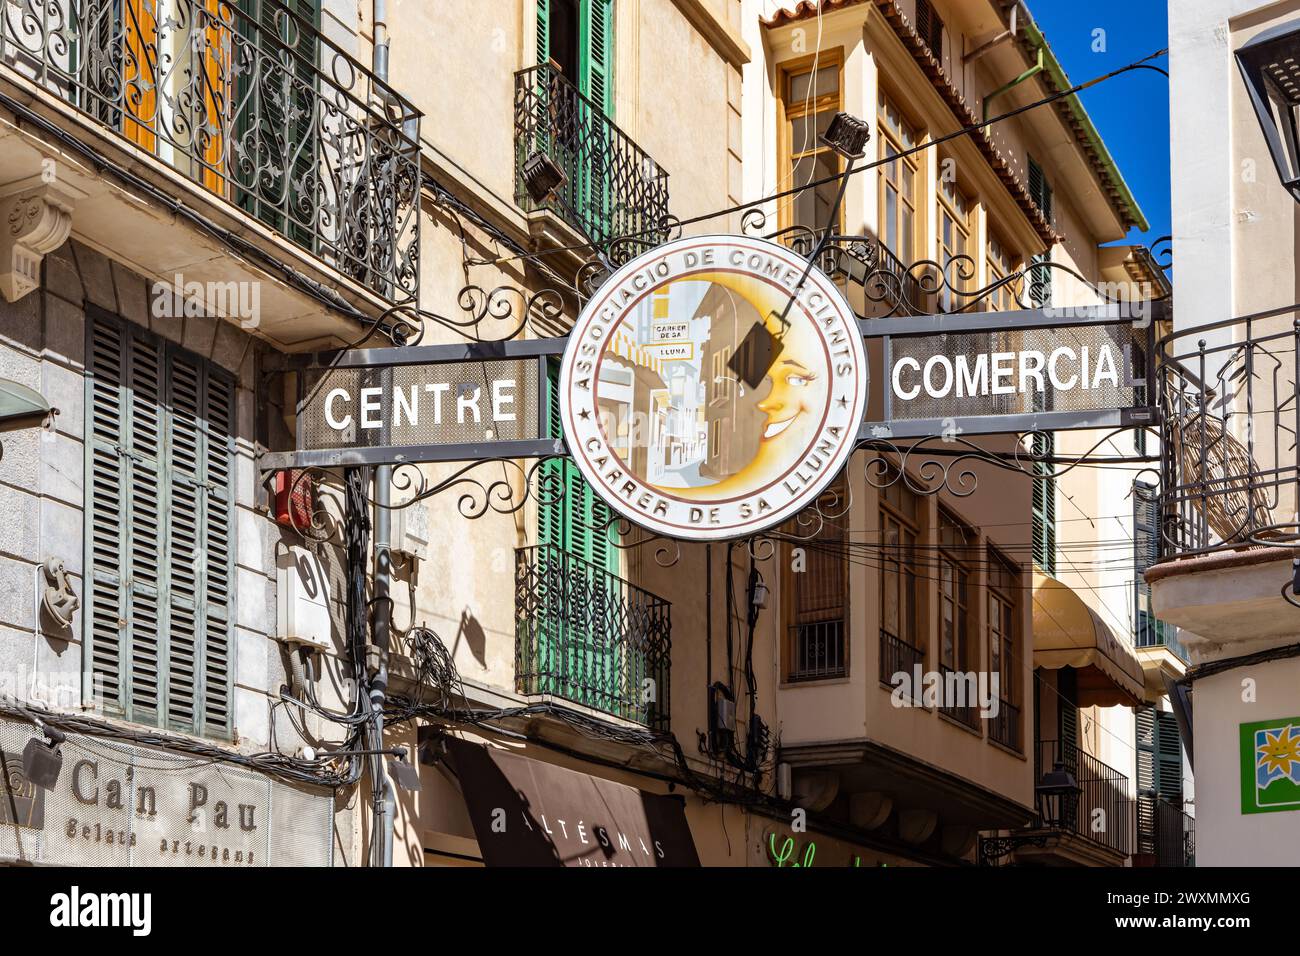 Centre Comercial sign above Carrer de Sa Lluna, a popular shopping street in Soller, Mallorca, Spain Stock Photo